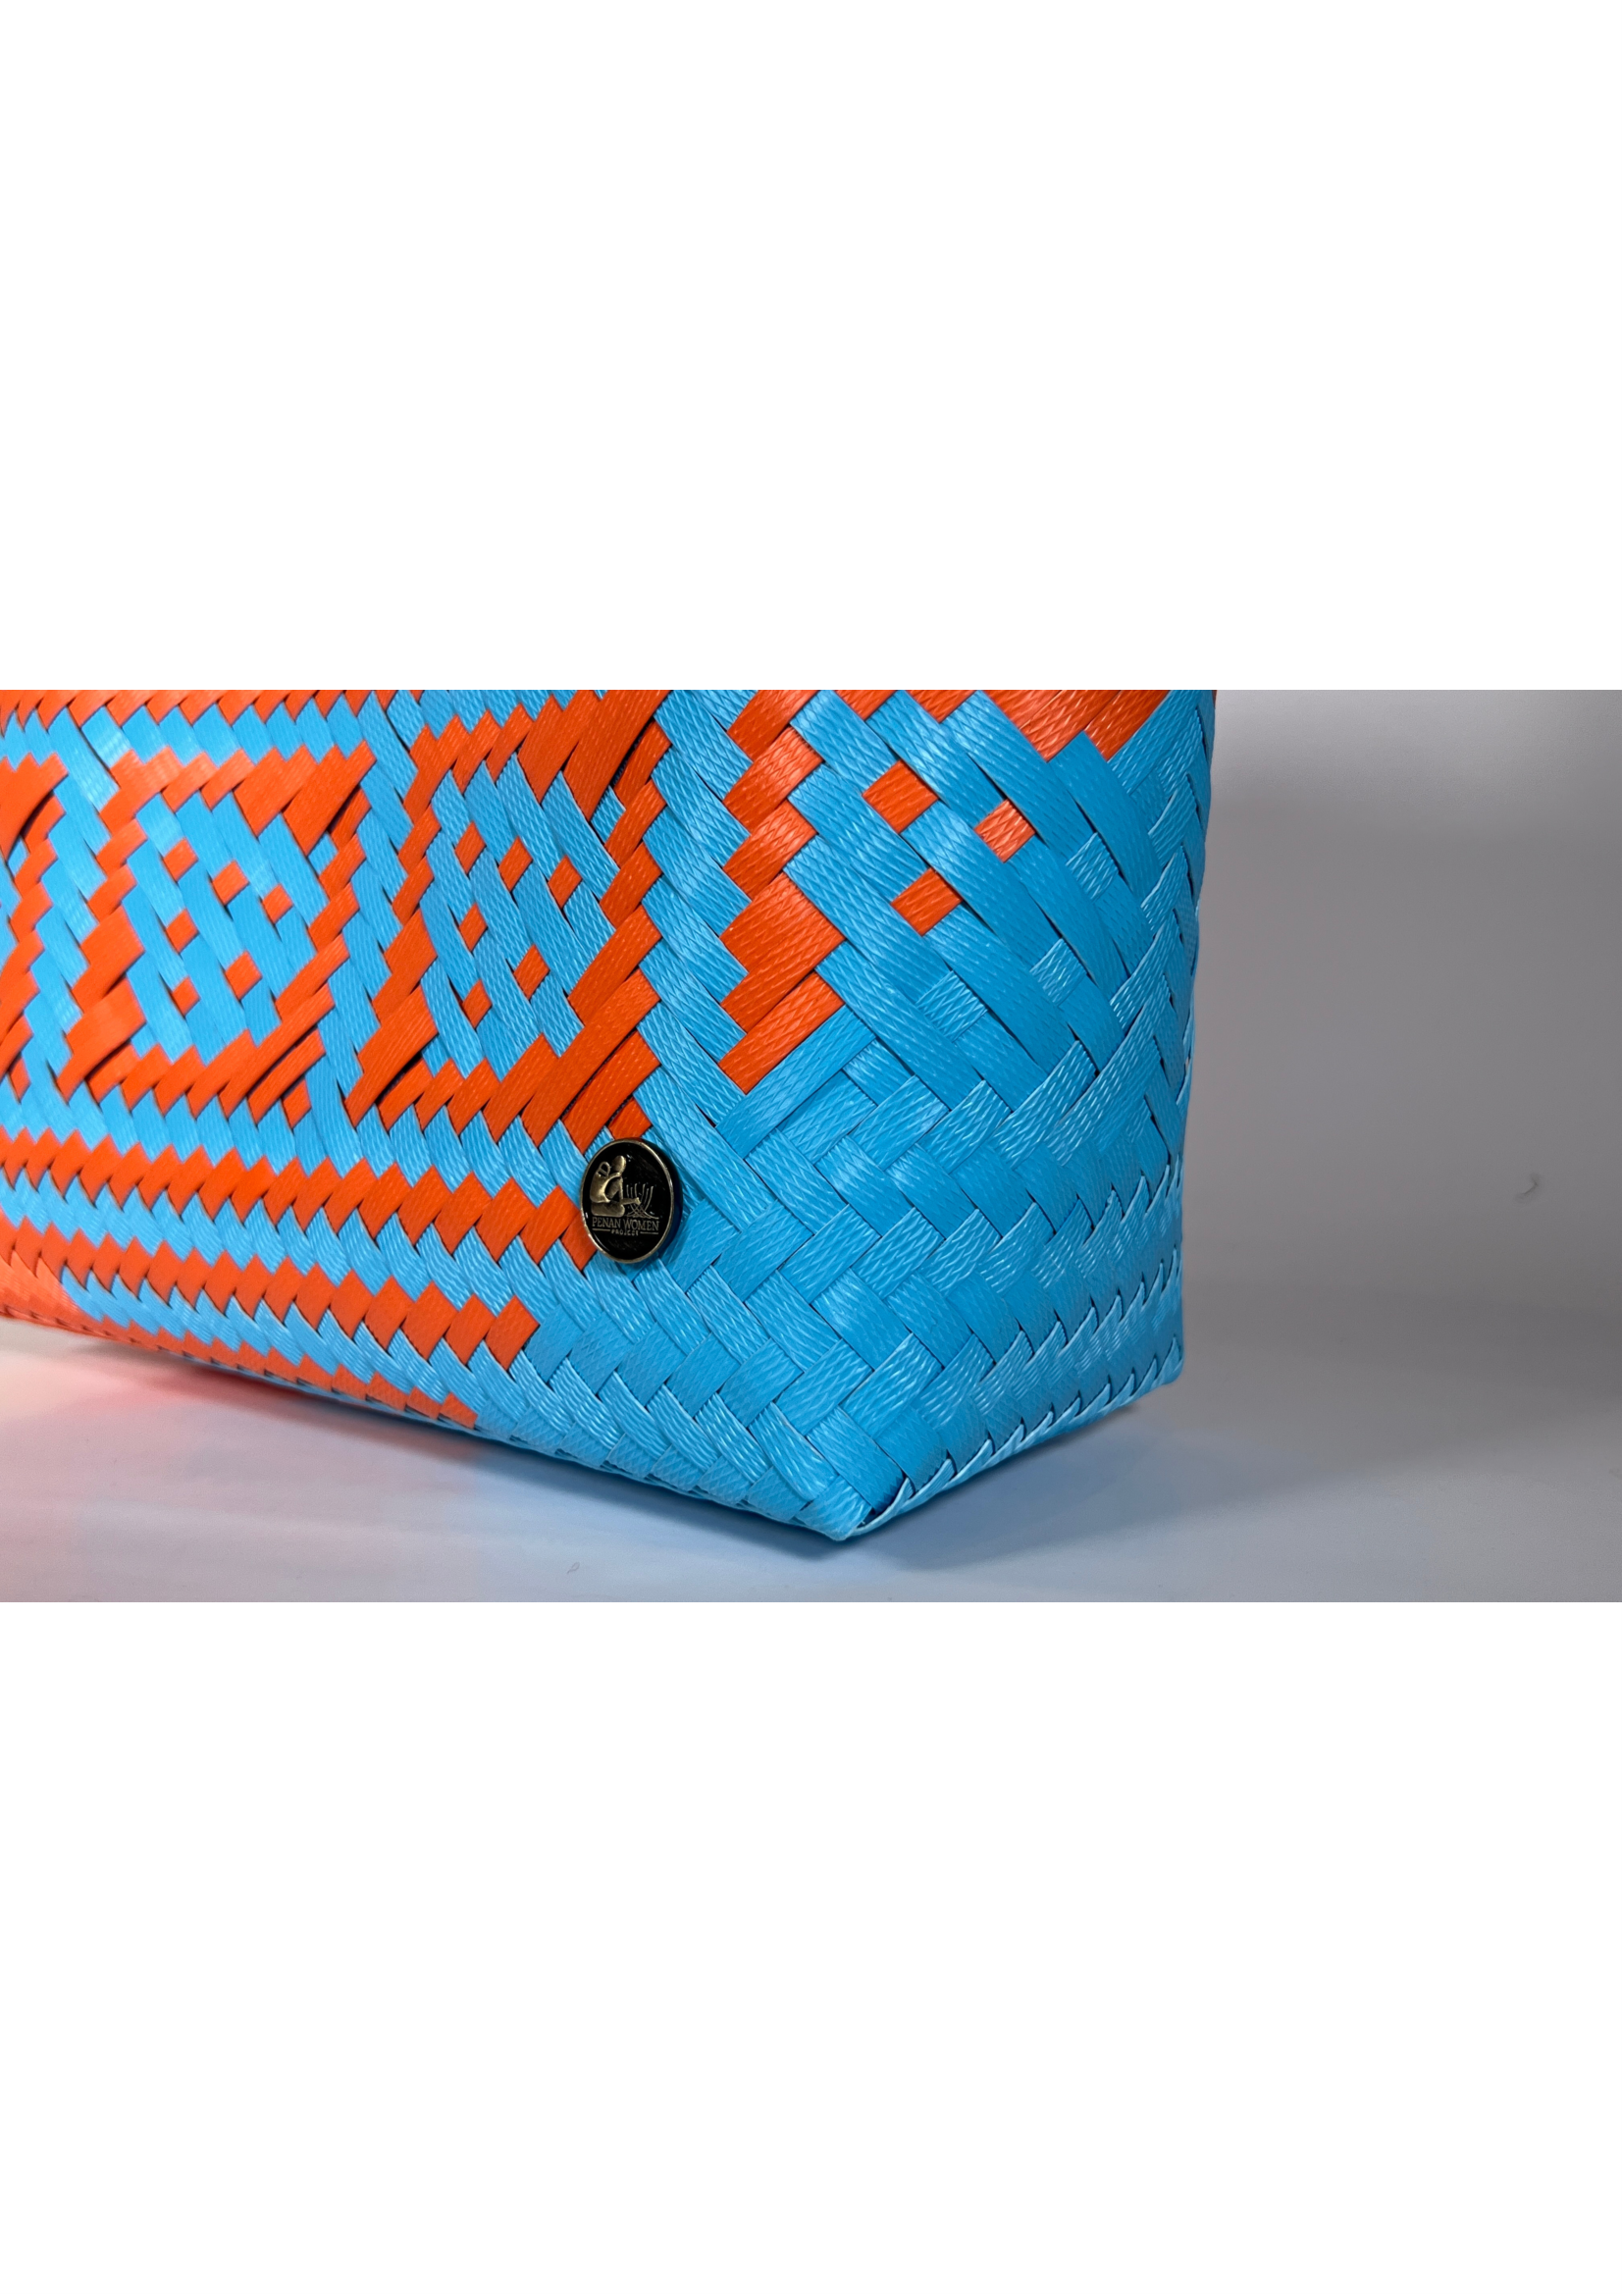 Orange & Mediterranean Blue Patterned Bag